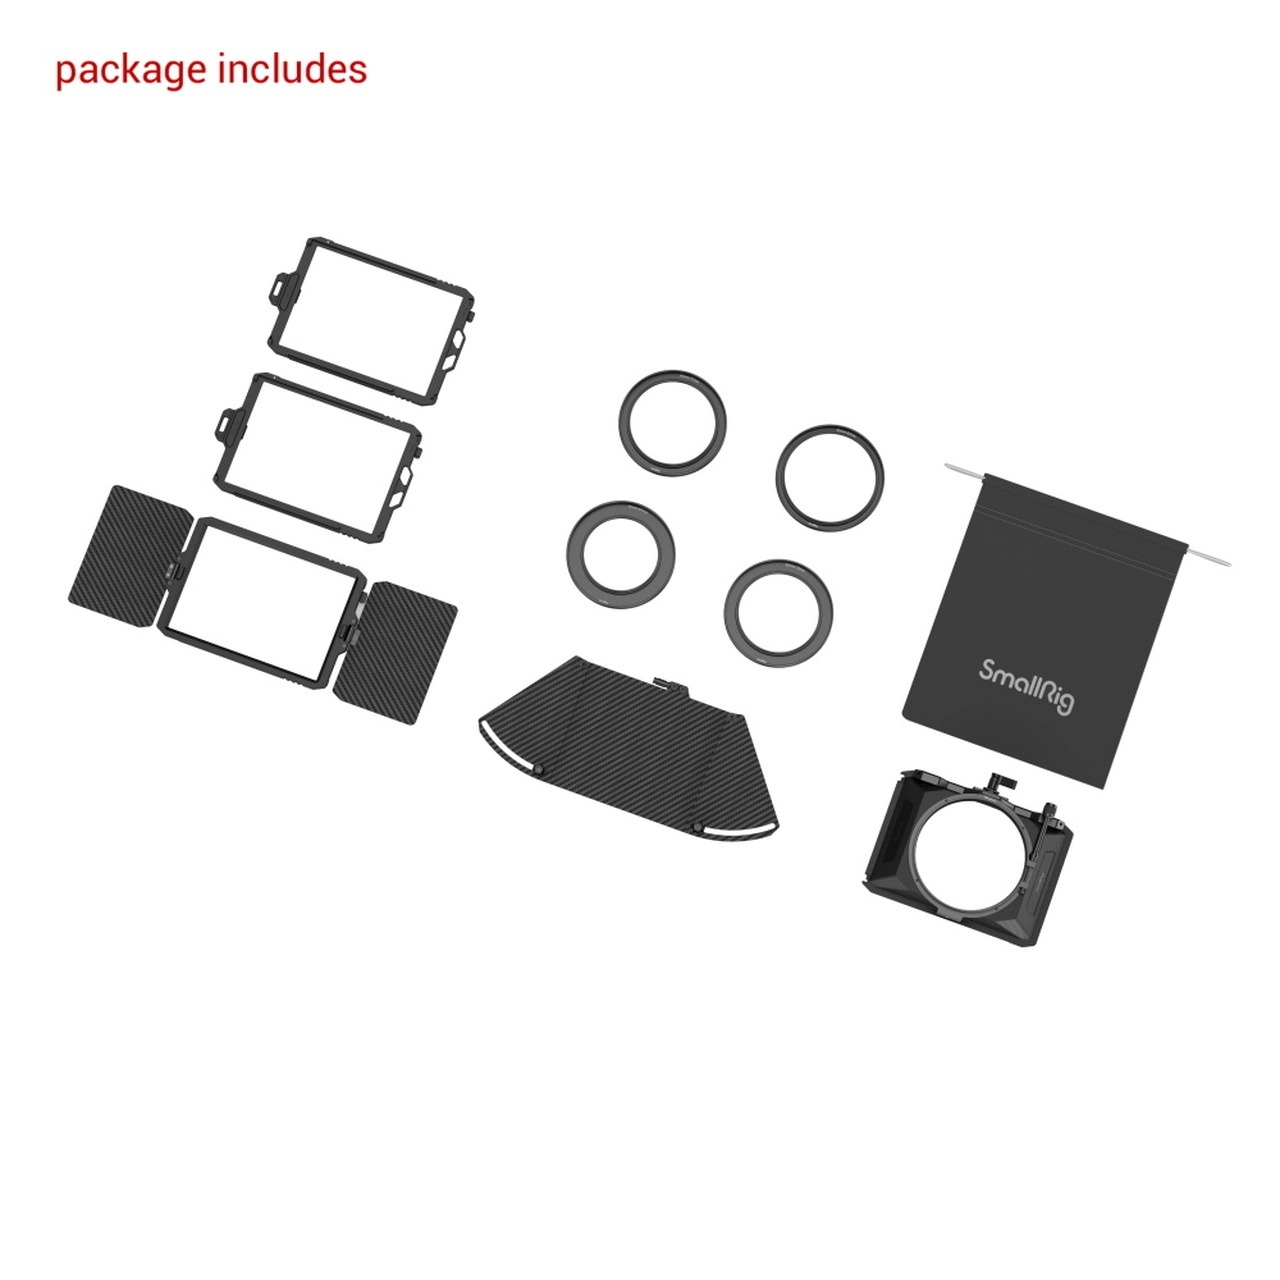 SmallRig mini Matte Box Pro 3680 แมทบ็อกซ์สำหรับชุดริกกล้อง ป้องกันแสงส่วนเกินเข้าสู่หน้าเลนส์ พร้อมถาดใส่ฟิลเตอร์ขนาด 4 x 5.65 สองแผ่น ราคา 4850 บาท